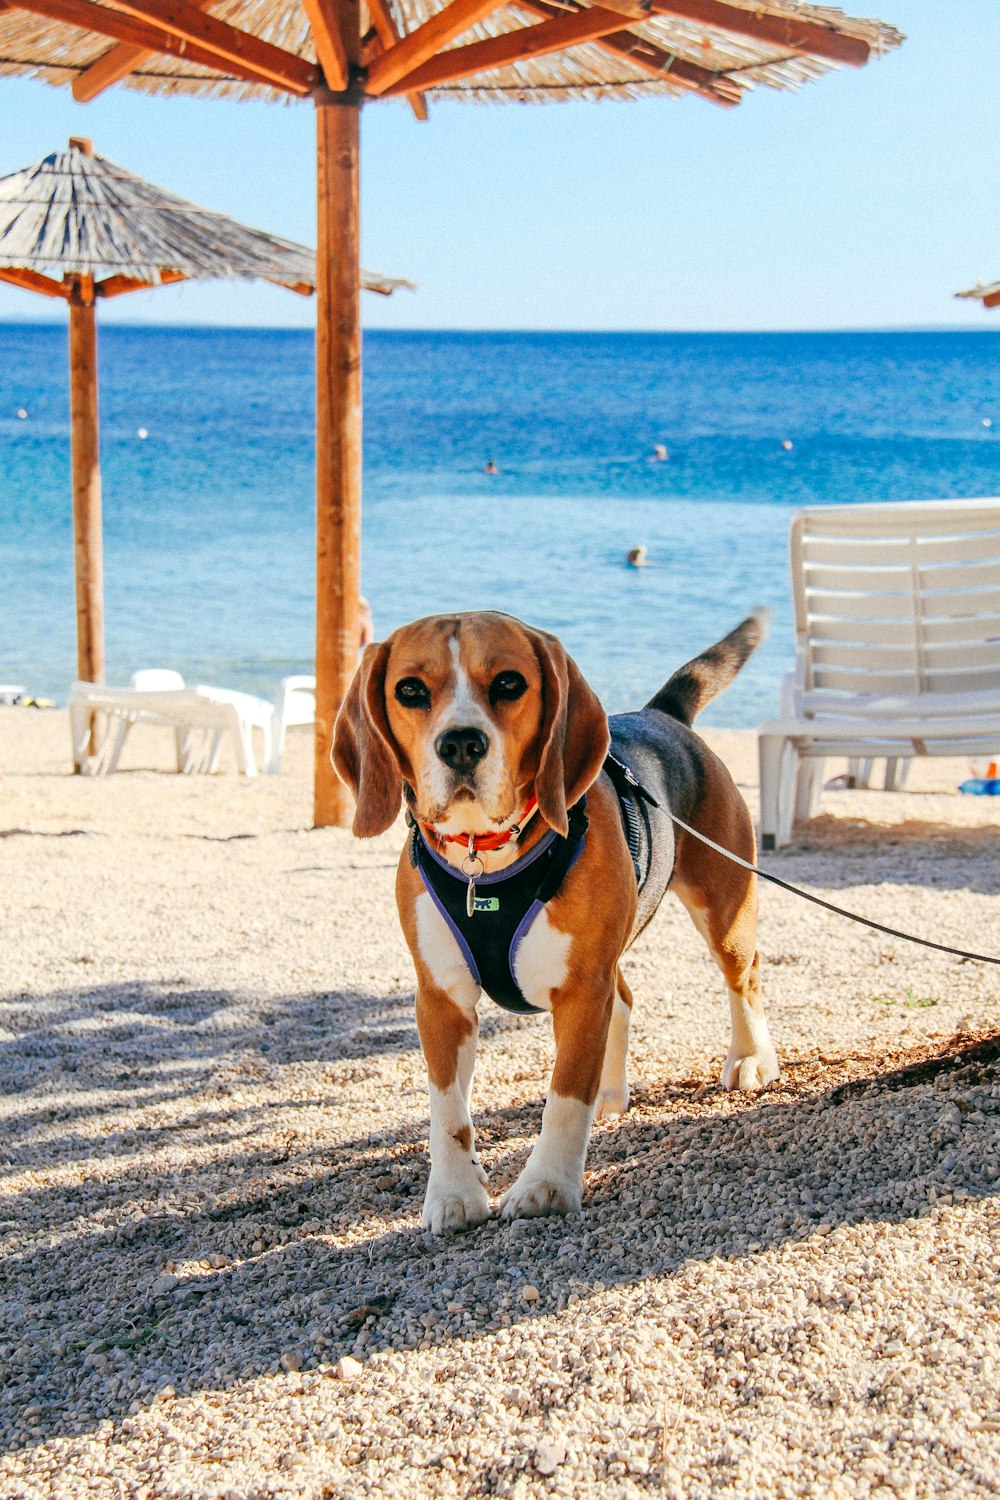 a dog on a leash on a beach